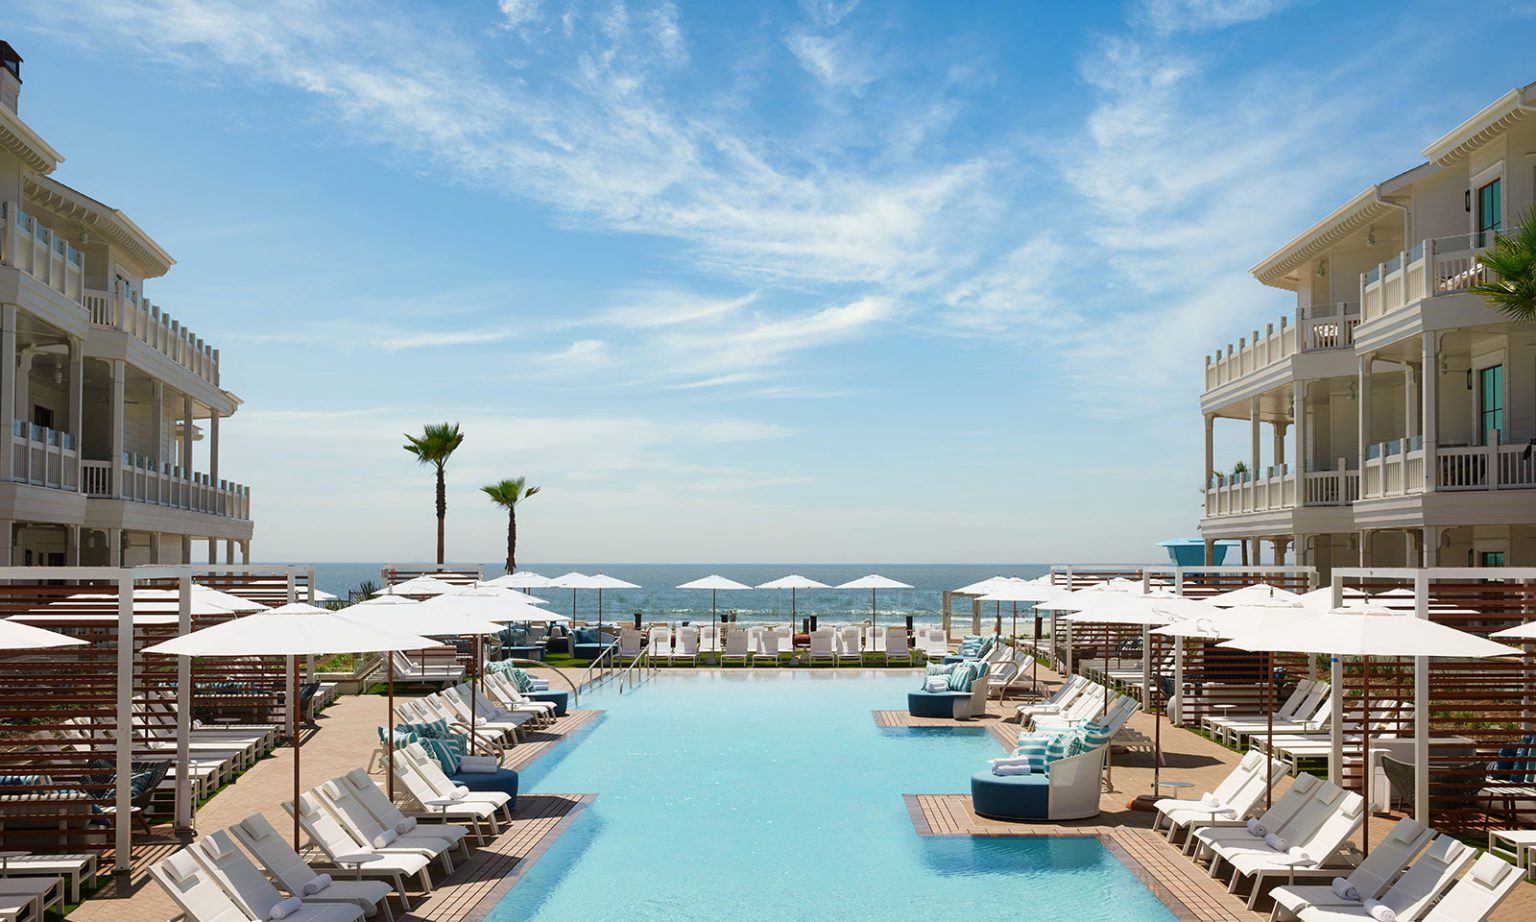 Outdoor pool at Hotel Del Coronado California 